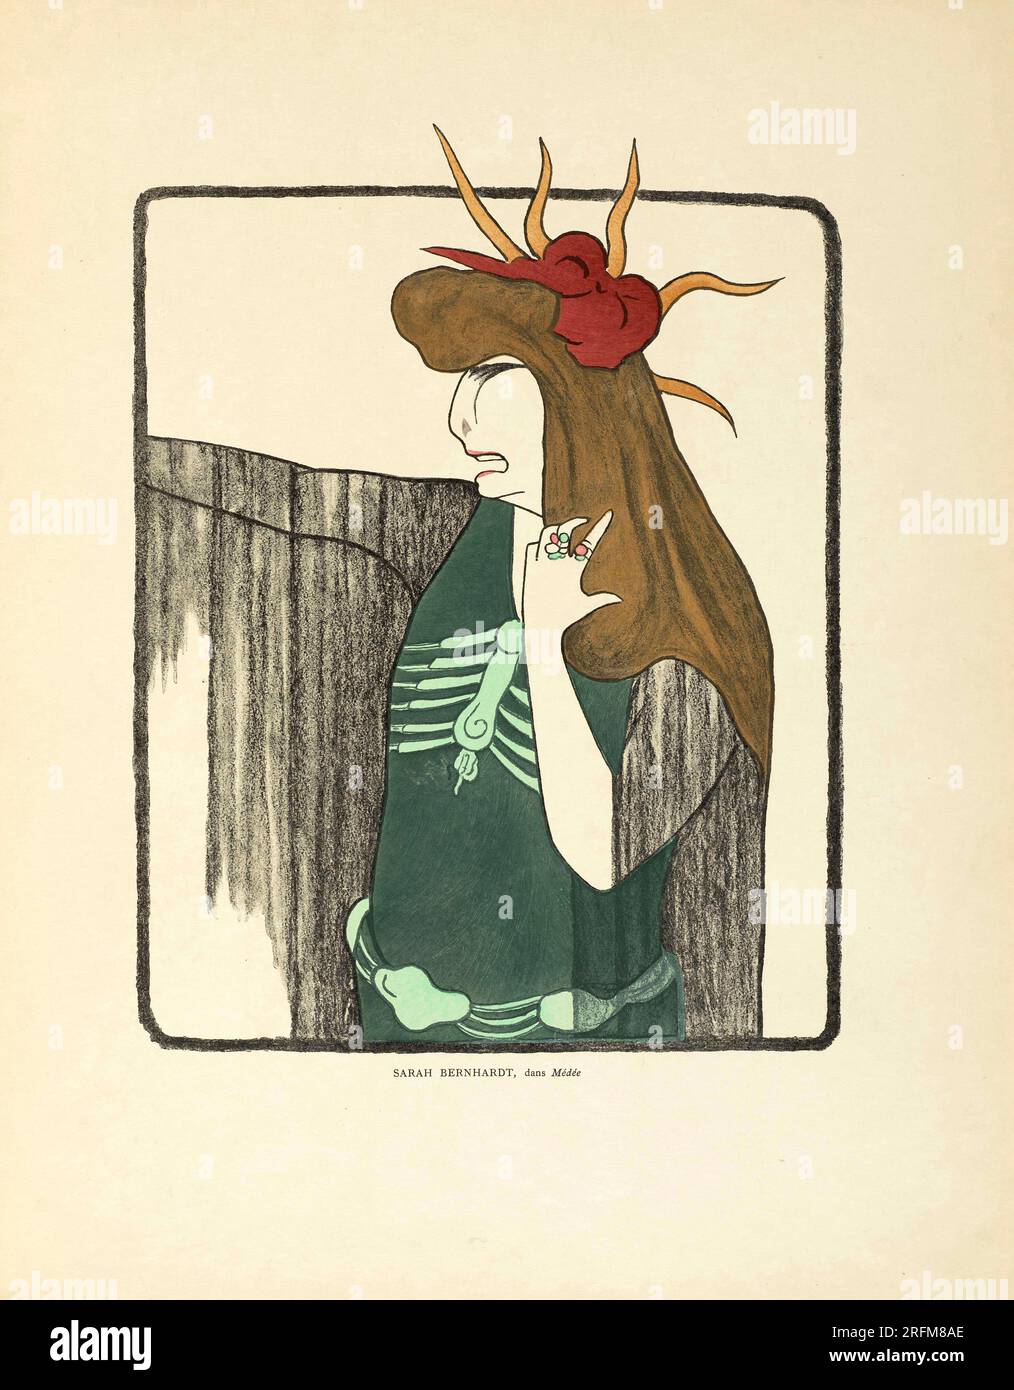 Sarah Bernhardt, dans Médée - ACTRESSES OF THE BELLE EPOQUE. Leonetto Cappiello, 1875-1942. Nos actrices. Paris- Éditions de la Revue Blanche, 1899 Stock Photo